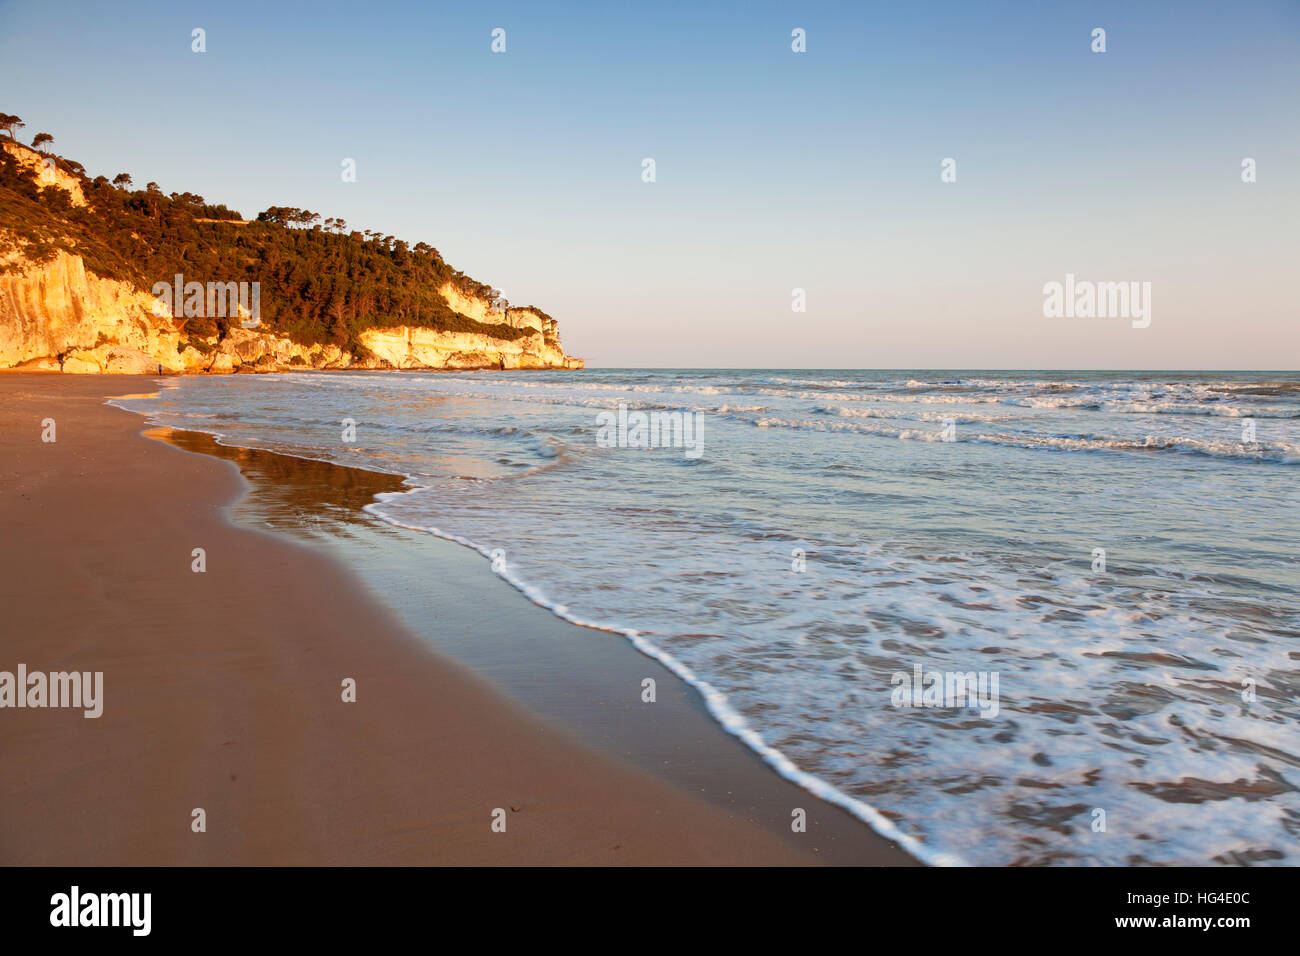 Spiaggia di Jalillo beach, Peschici, Gargano, Foggia Province, Puglia, Italy, Mediterranean Stock Photo